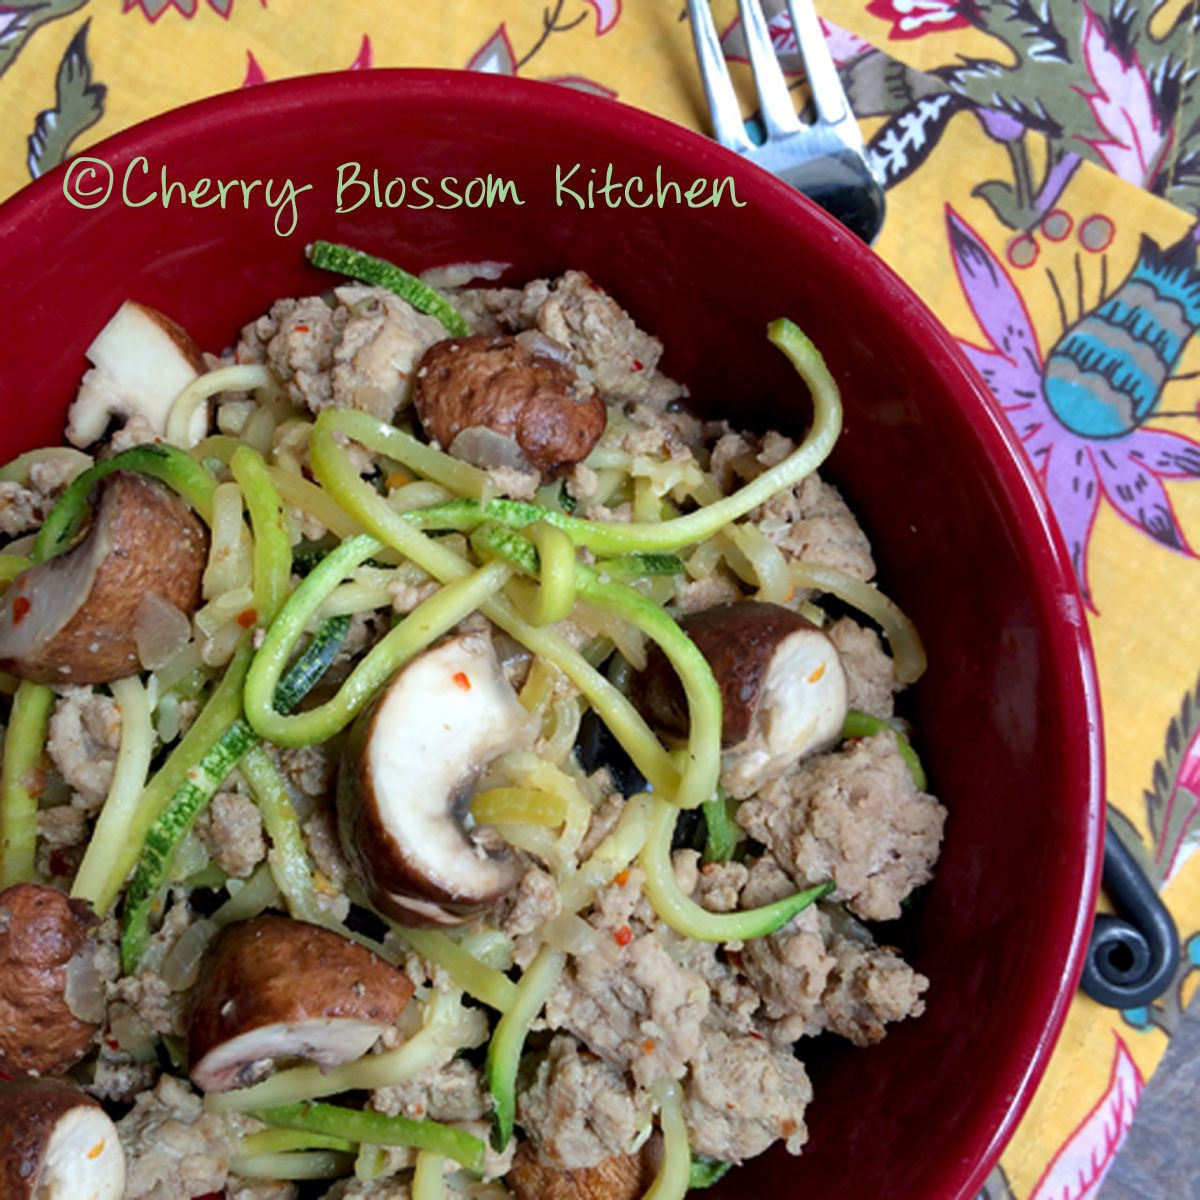 Ground Turkey And Mushrooms Recipe
 Dijon Zucchini Noodles with Ground Turkey and Mushrooms